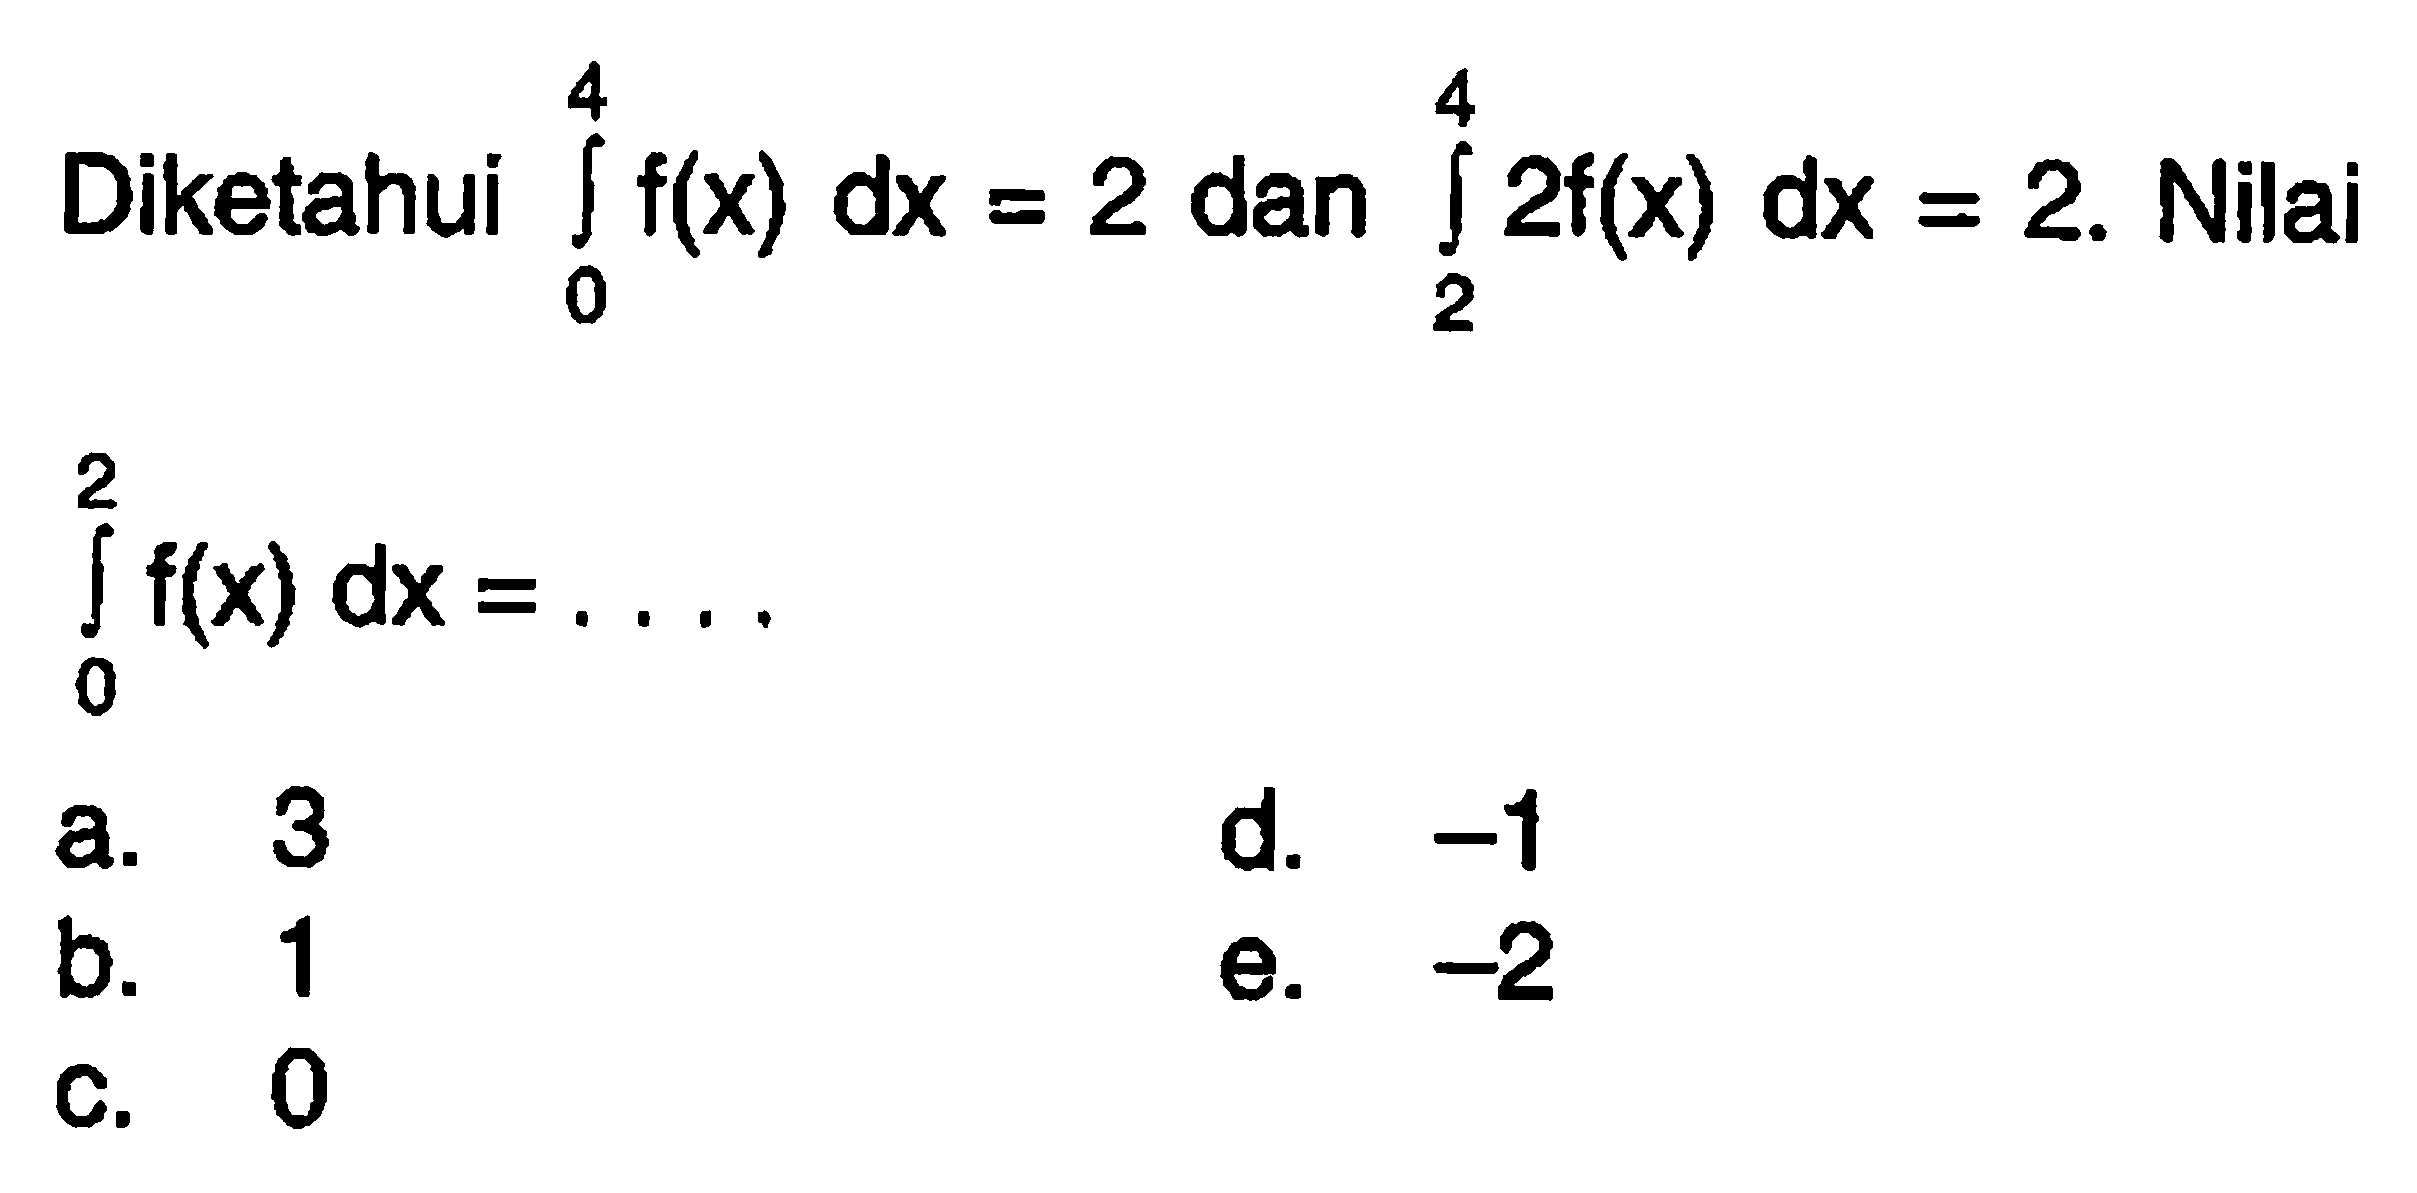 Diketahui integral 0 4 f(x) dx=2 dan integral 2 4 2f(x) dx=2. Nilai integral dari 0 2 f(x) dx=... 